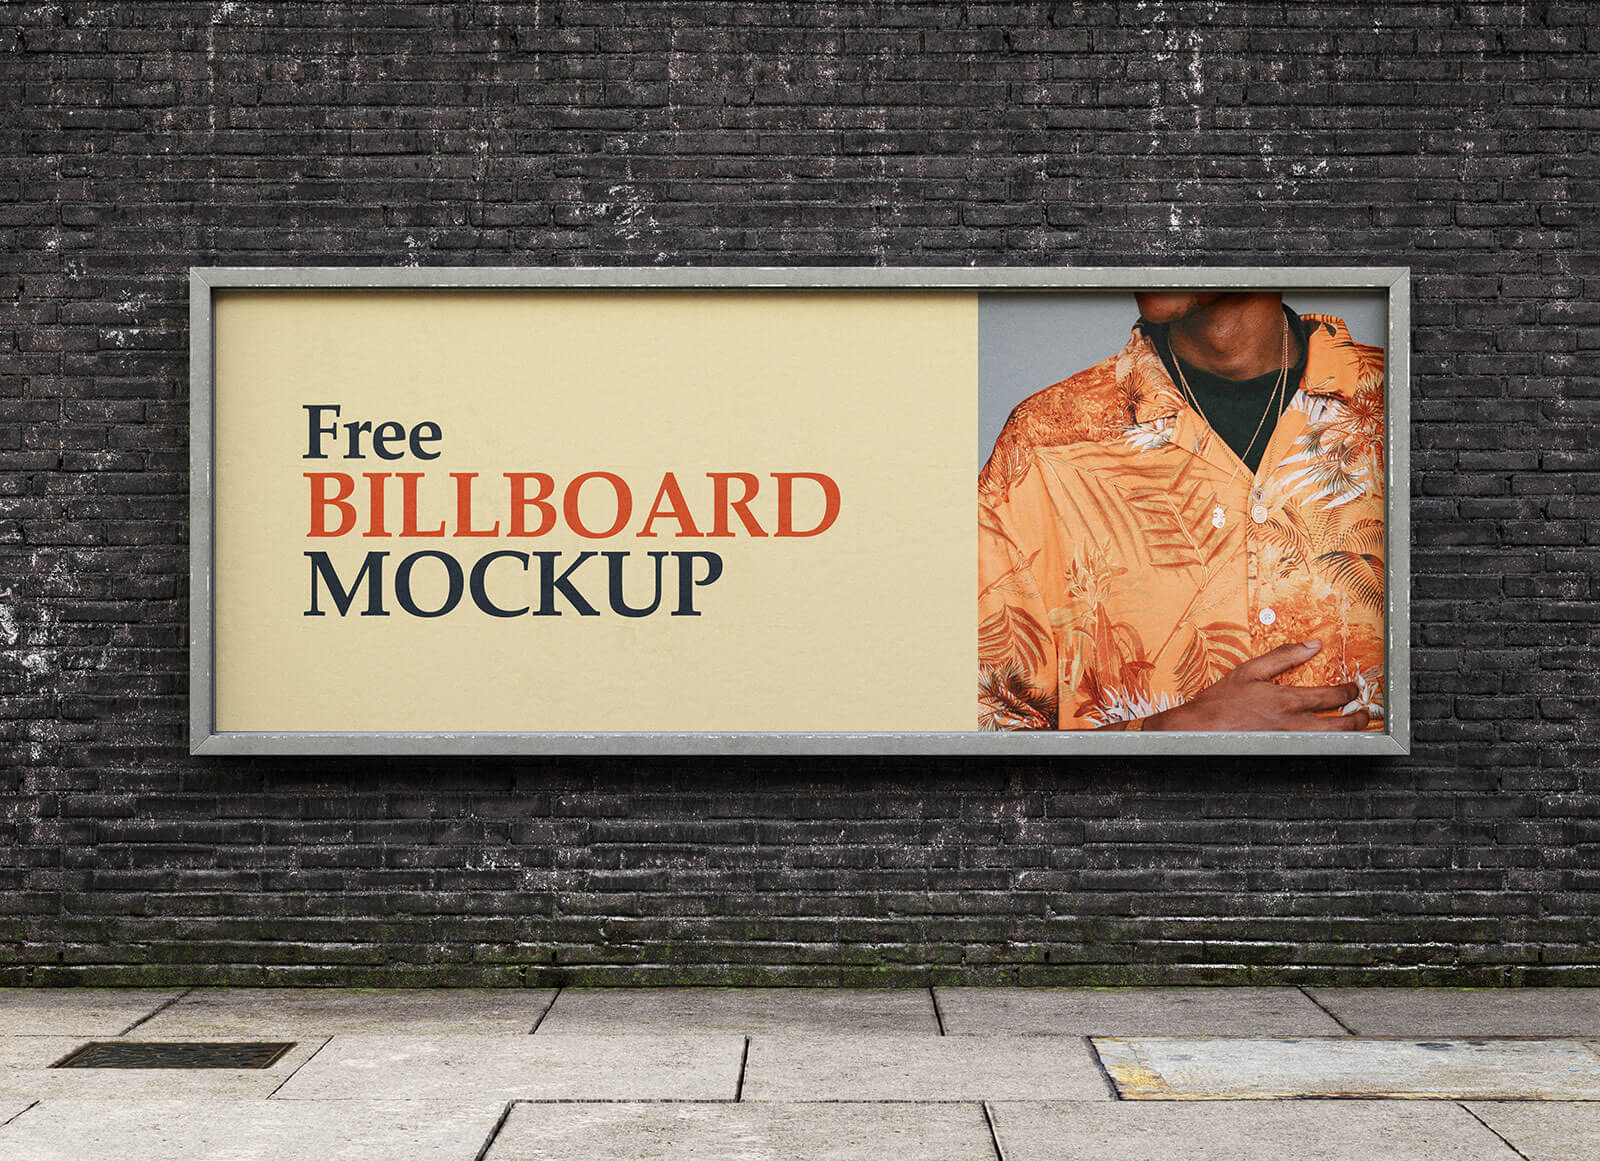 Brick Wall Street Billboard Mockup